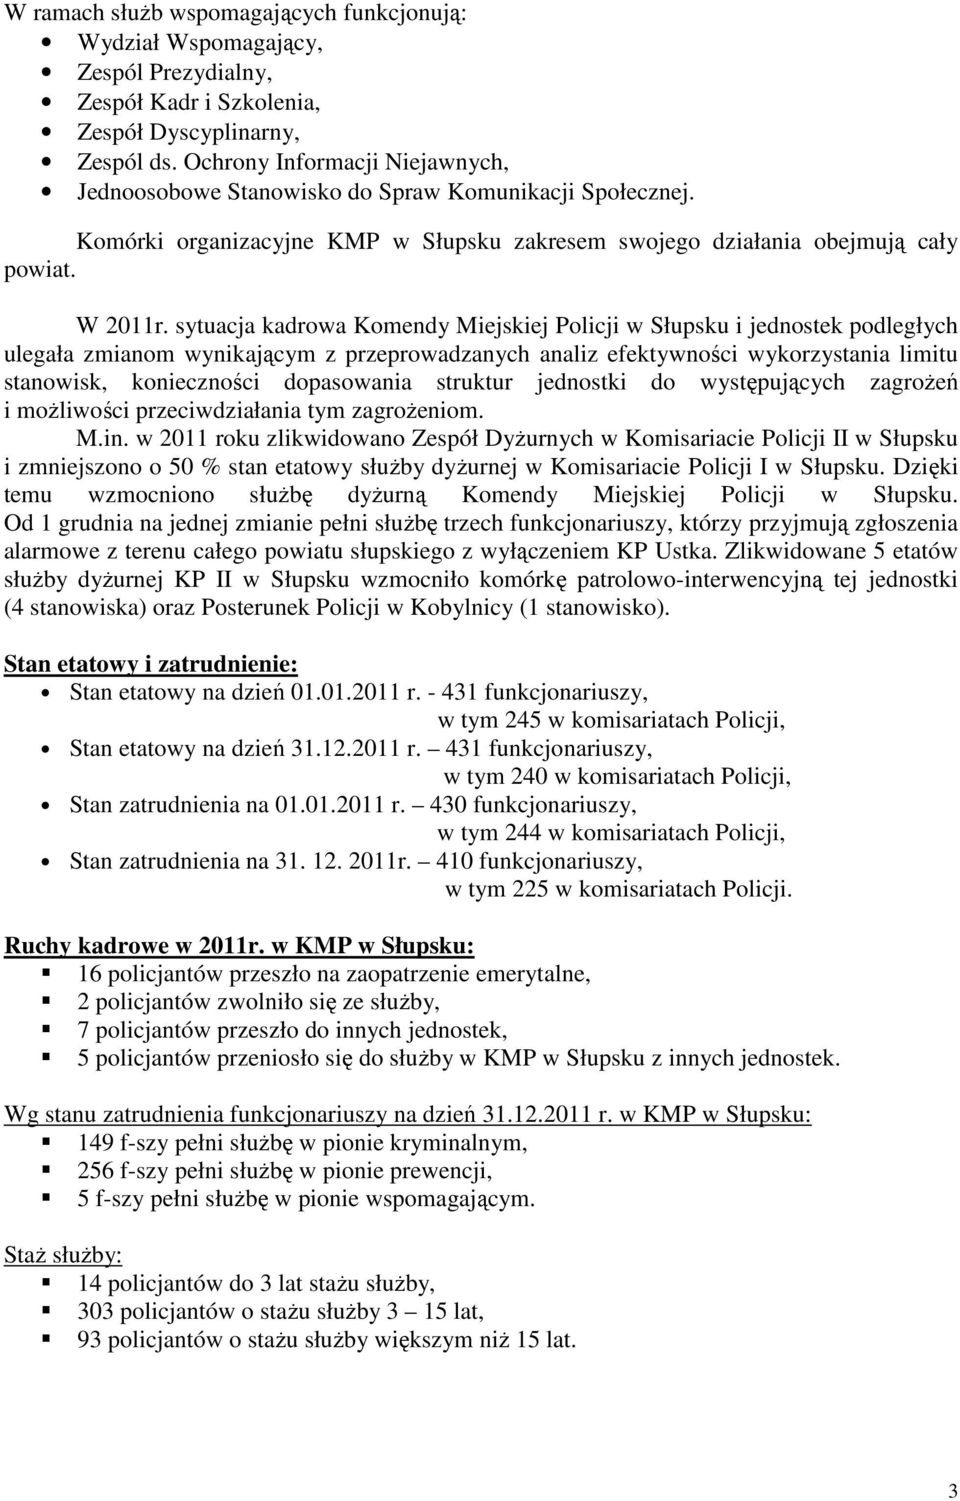 sytuacja kadrowa Komendy Miejskiej Policji w Słupsku i jednostek podległych ulegała zmianom wynikającym z przeprowadzanych analiz efektywności wykorzystania limitu stanowisk, konieczności dopasowania